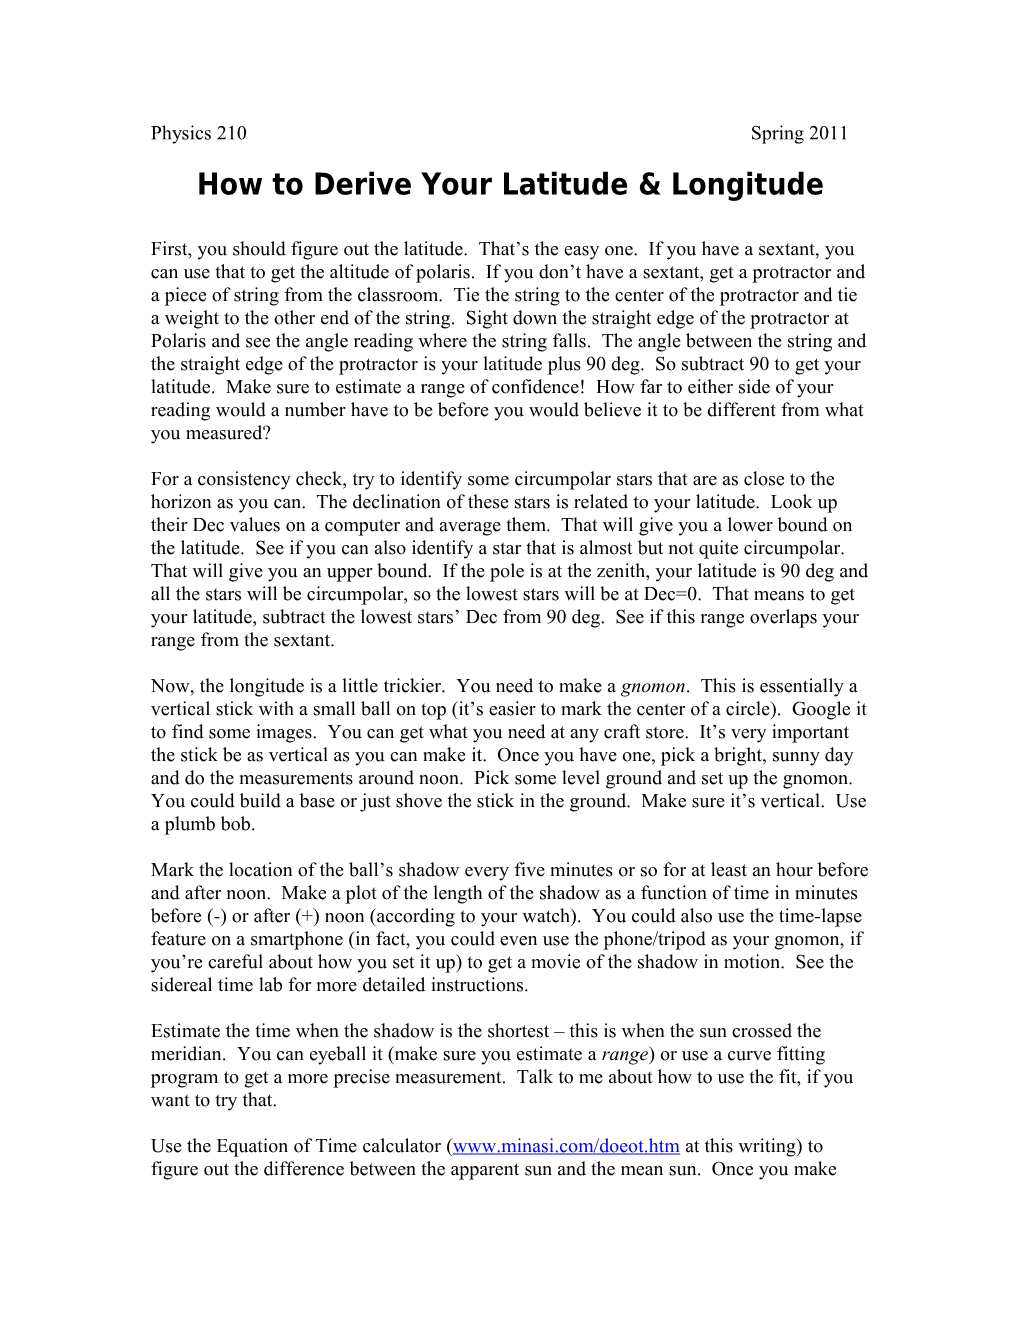 How to Derive Your Latitude & Longitude